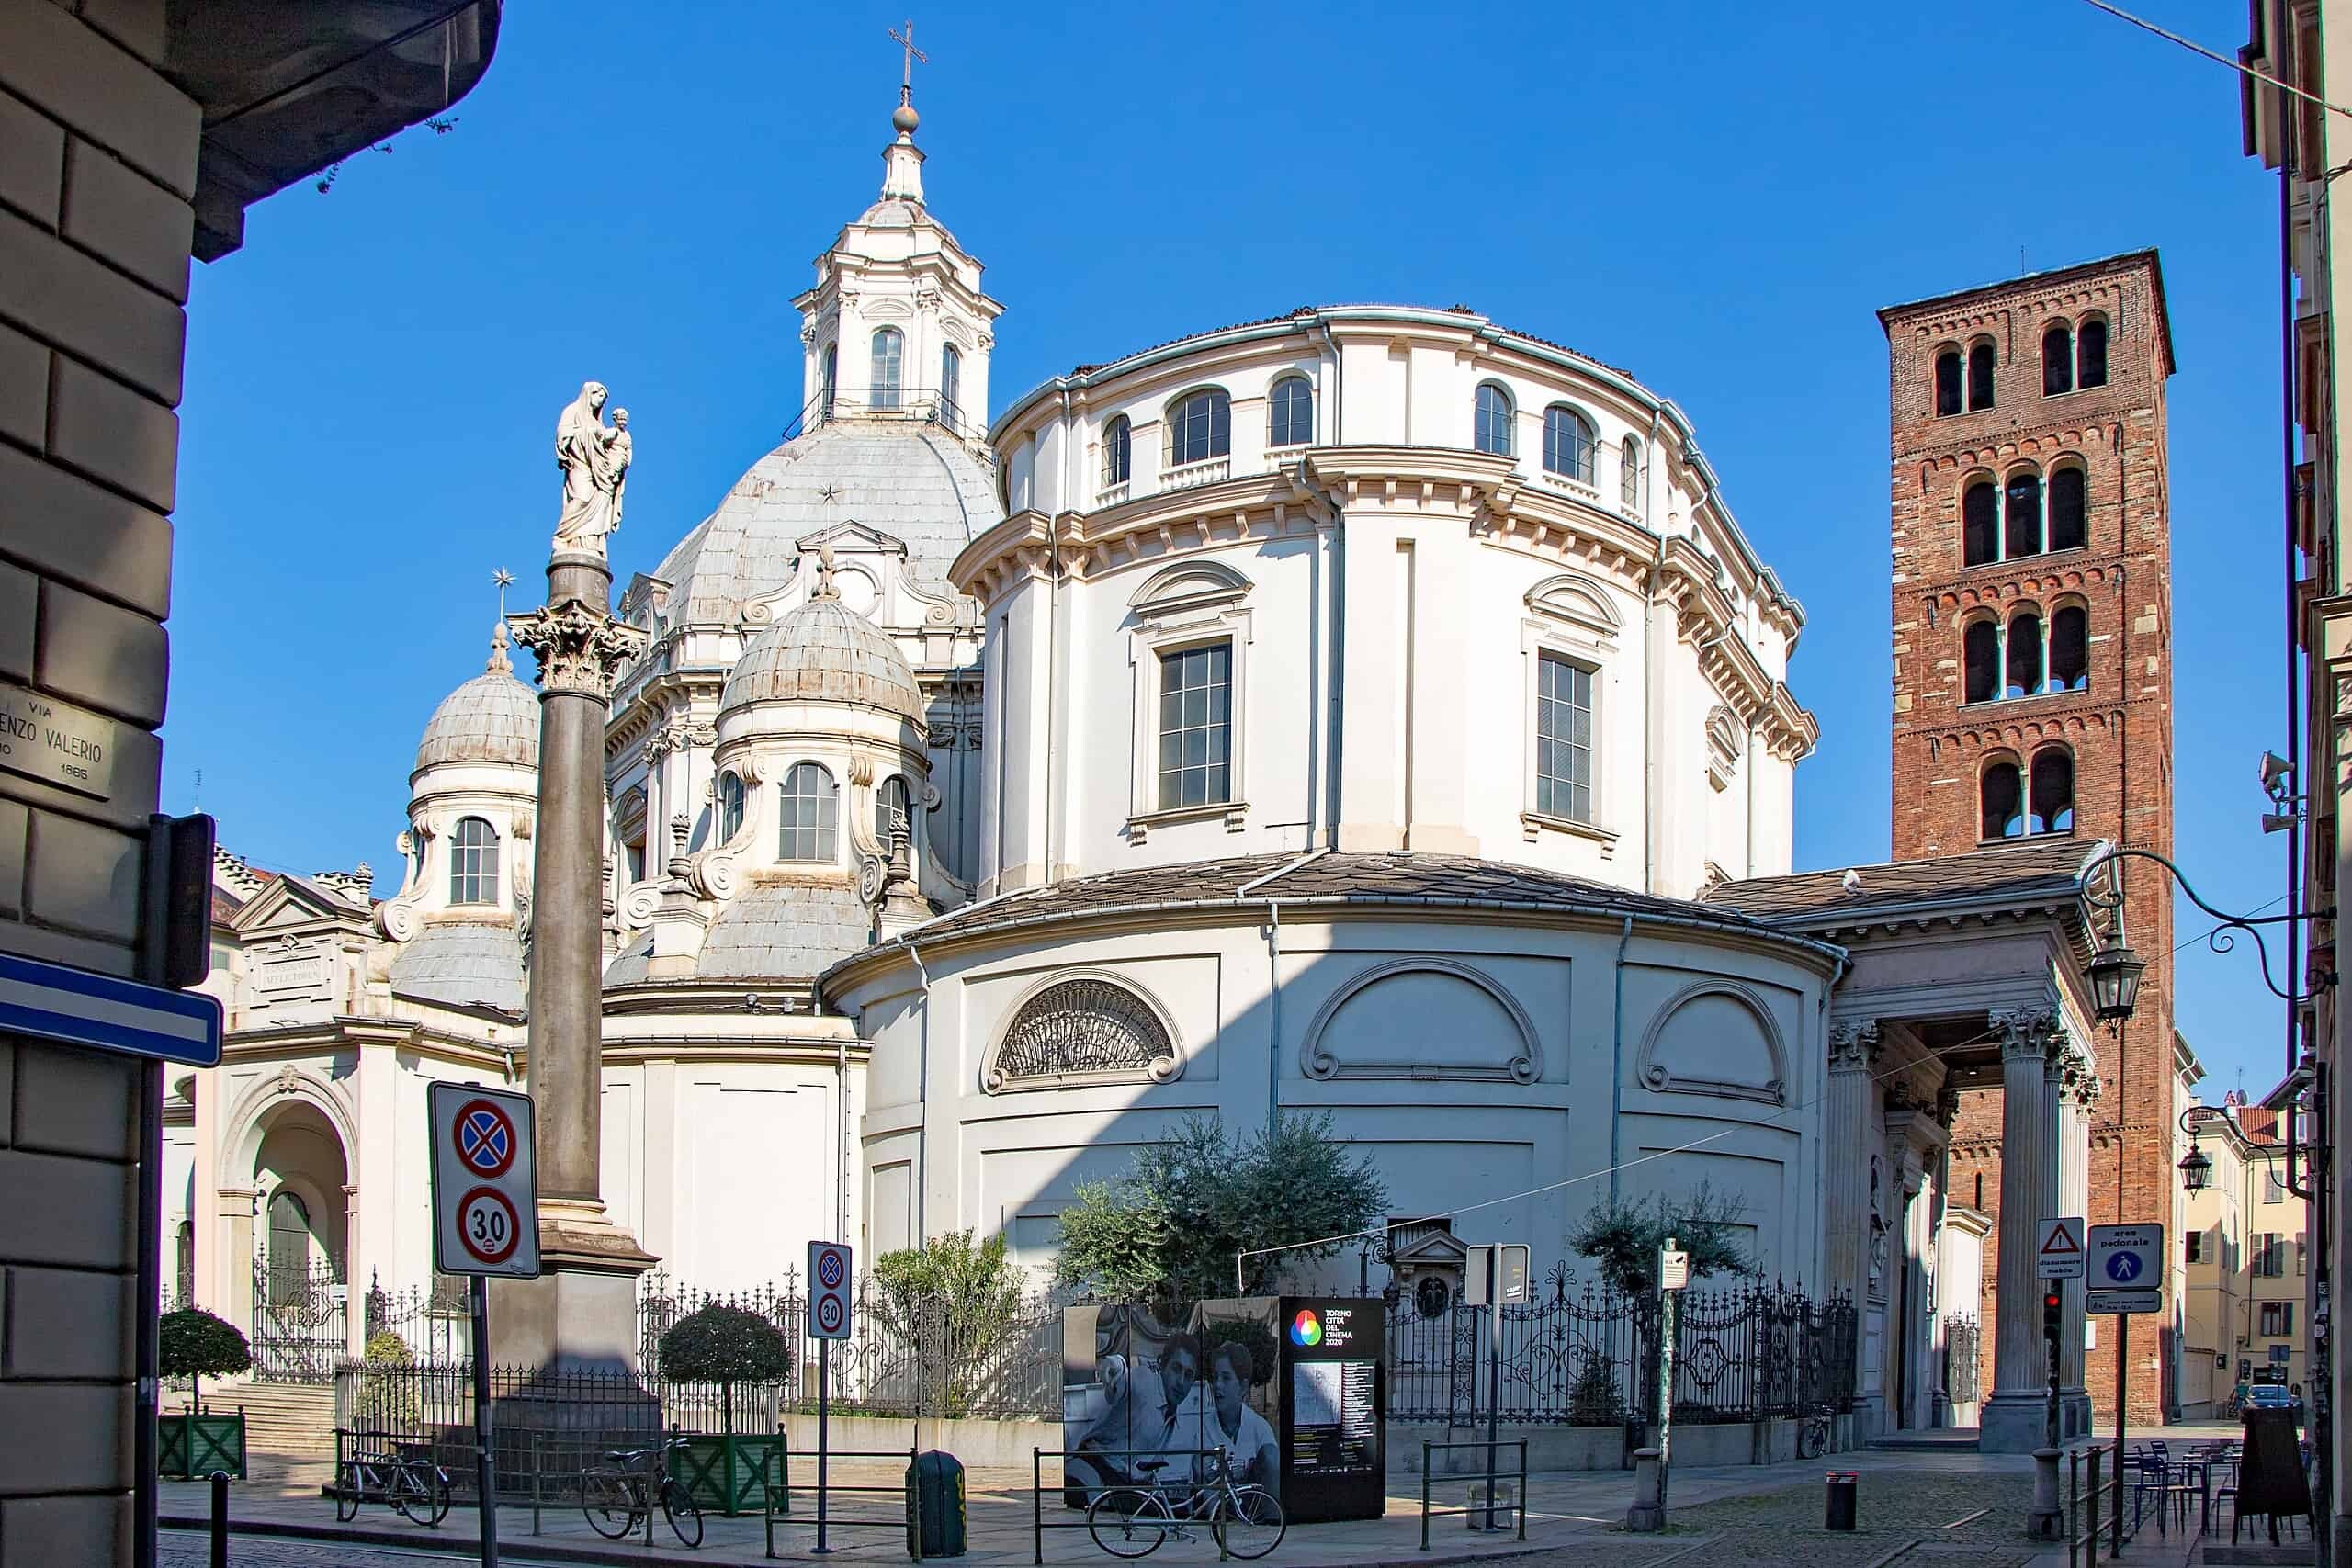 Turin Duomo - Cathedral San Giovanni Battista